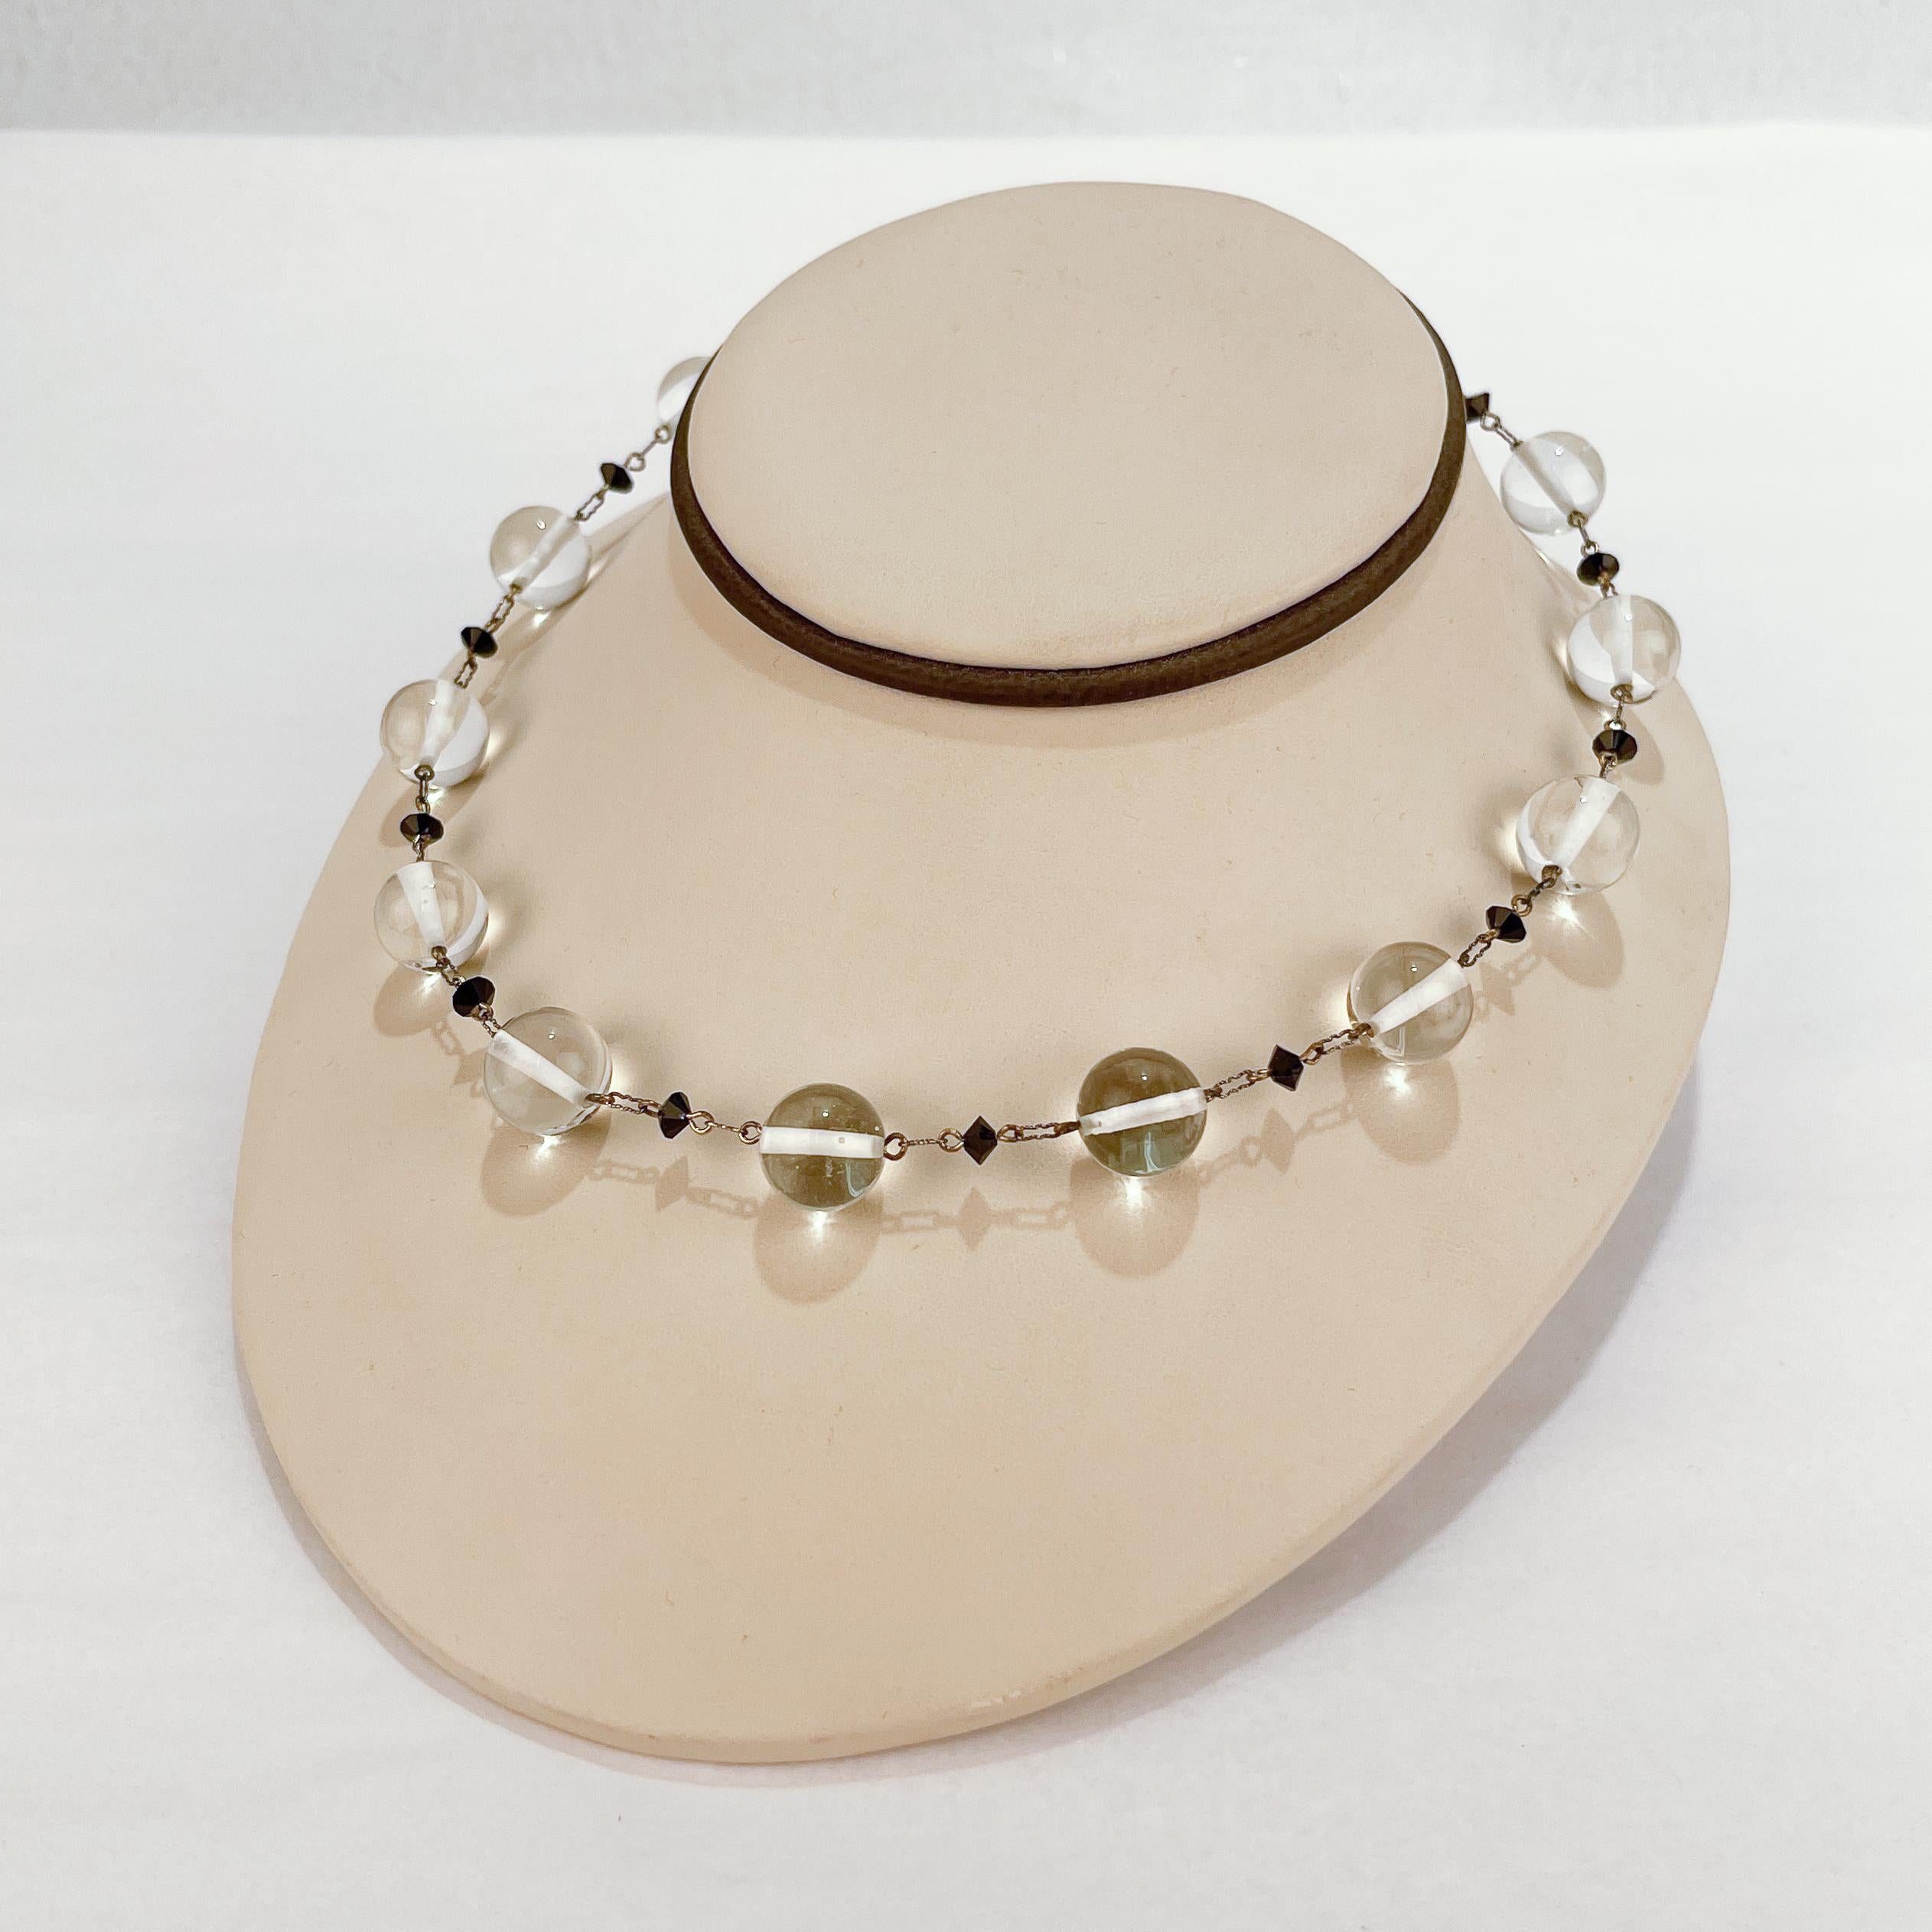 Un très beau collier ras du cou en perles de verre rétro et argent sterling.

Avec une alternance de perles en verre transparent de 13 mm et de perles en verre à facettes noires.

Chaque perle a une barre en sterling rivetée en son centre et est